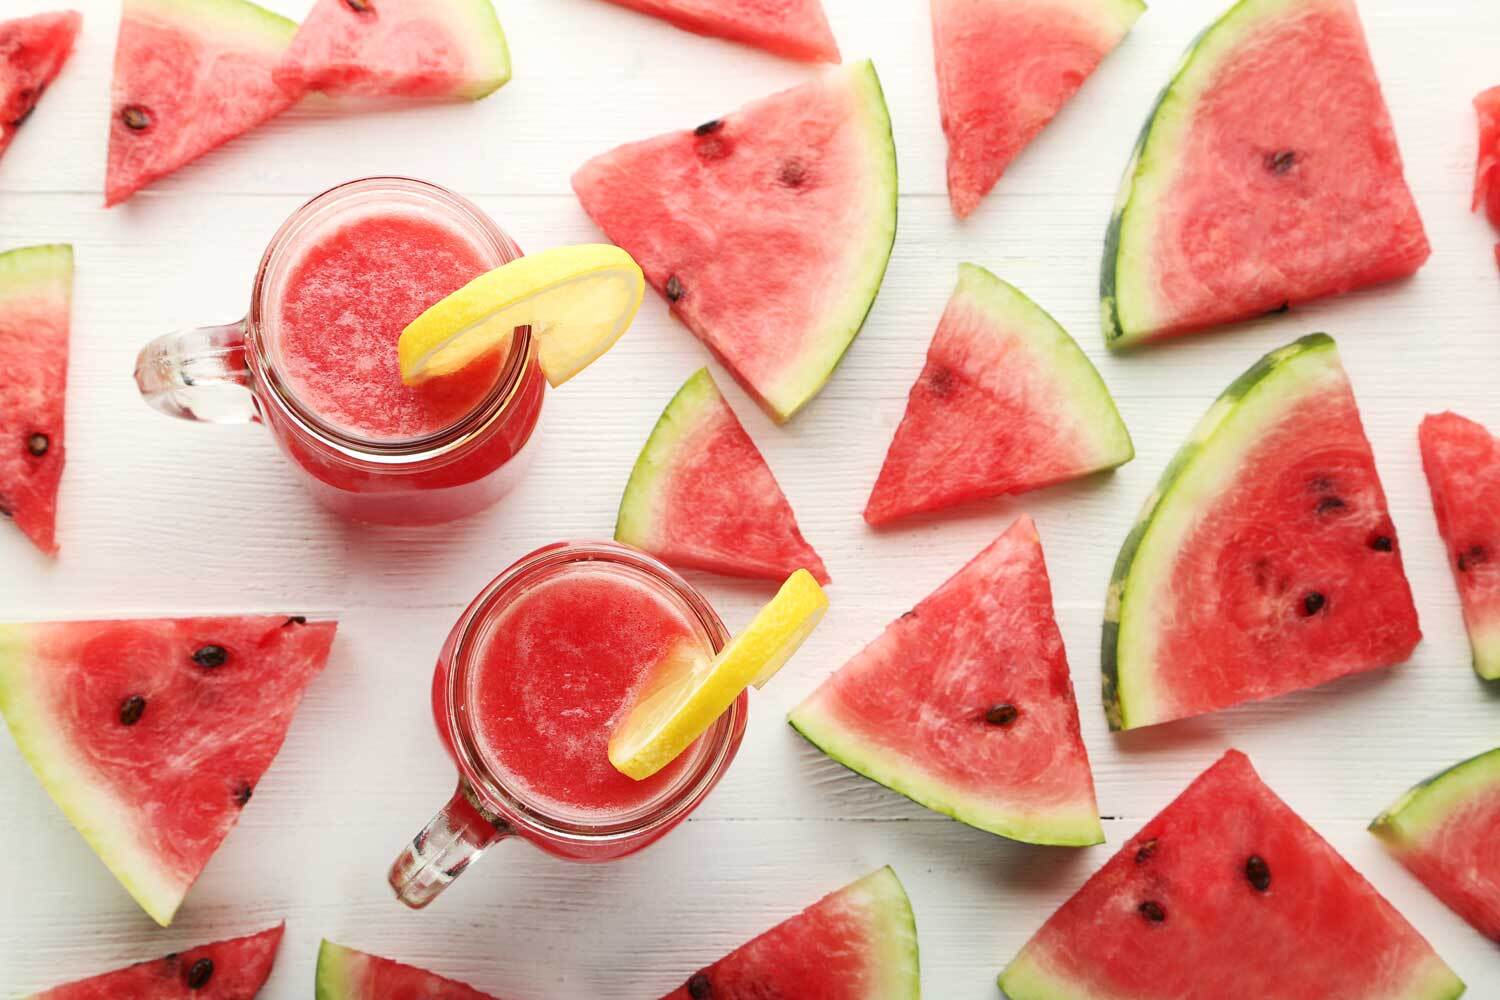 Buah semangka siap untuk dinikmati